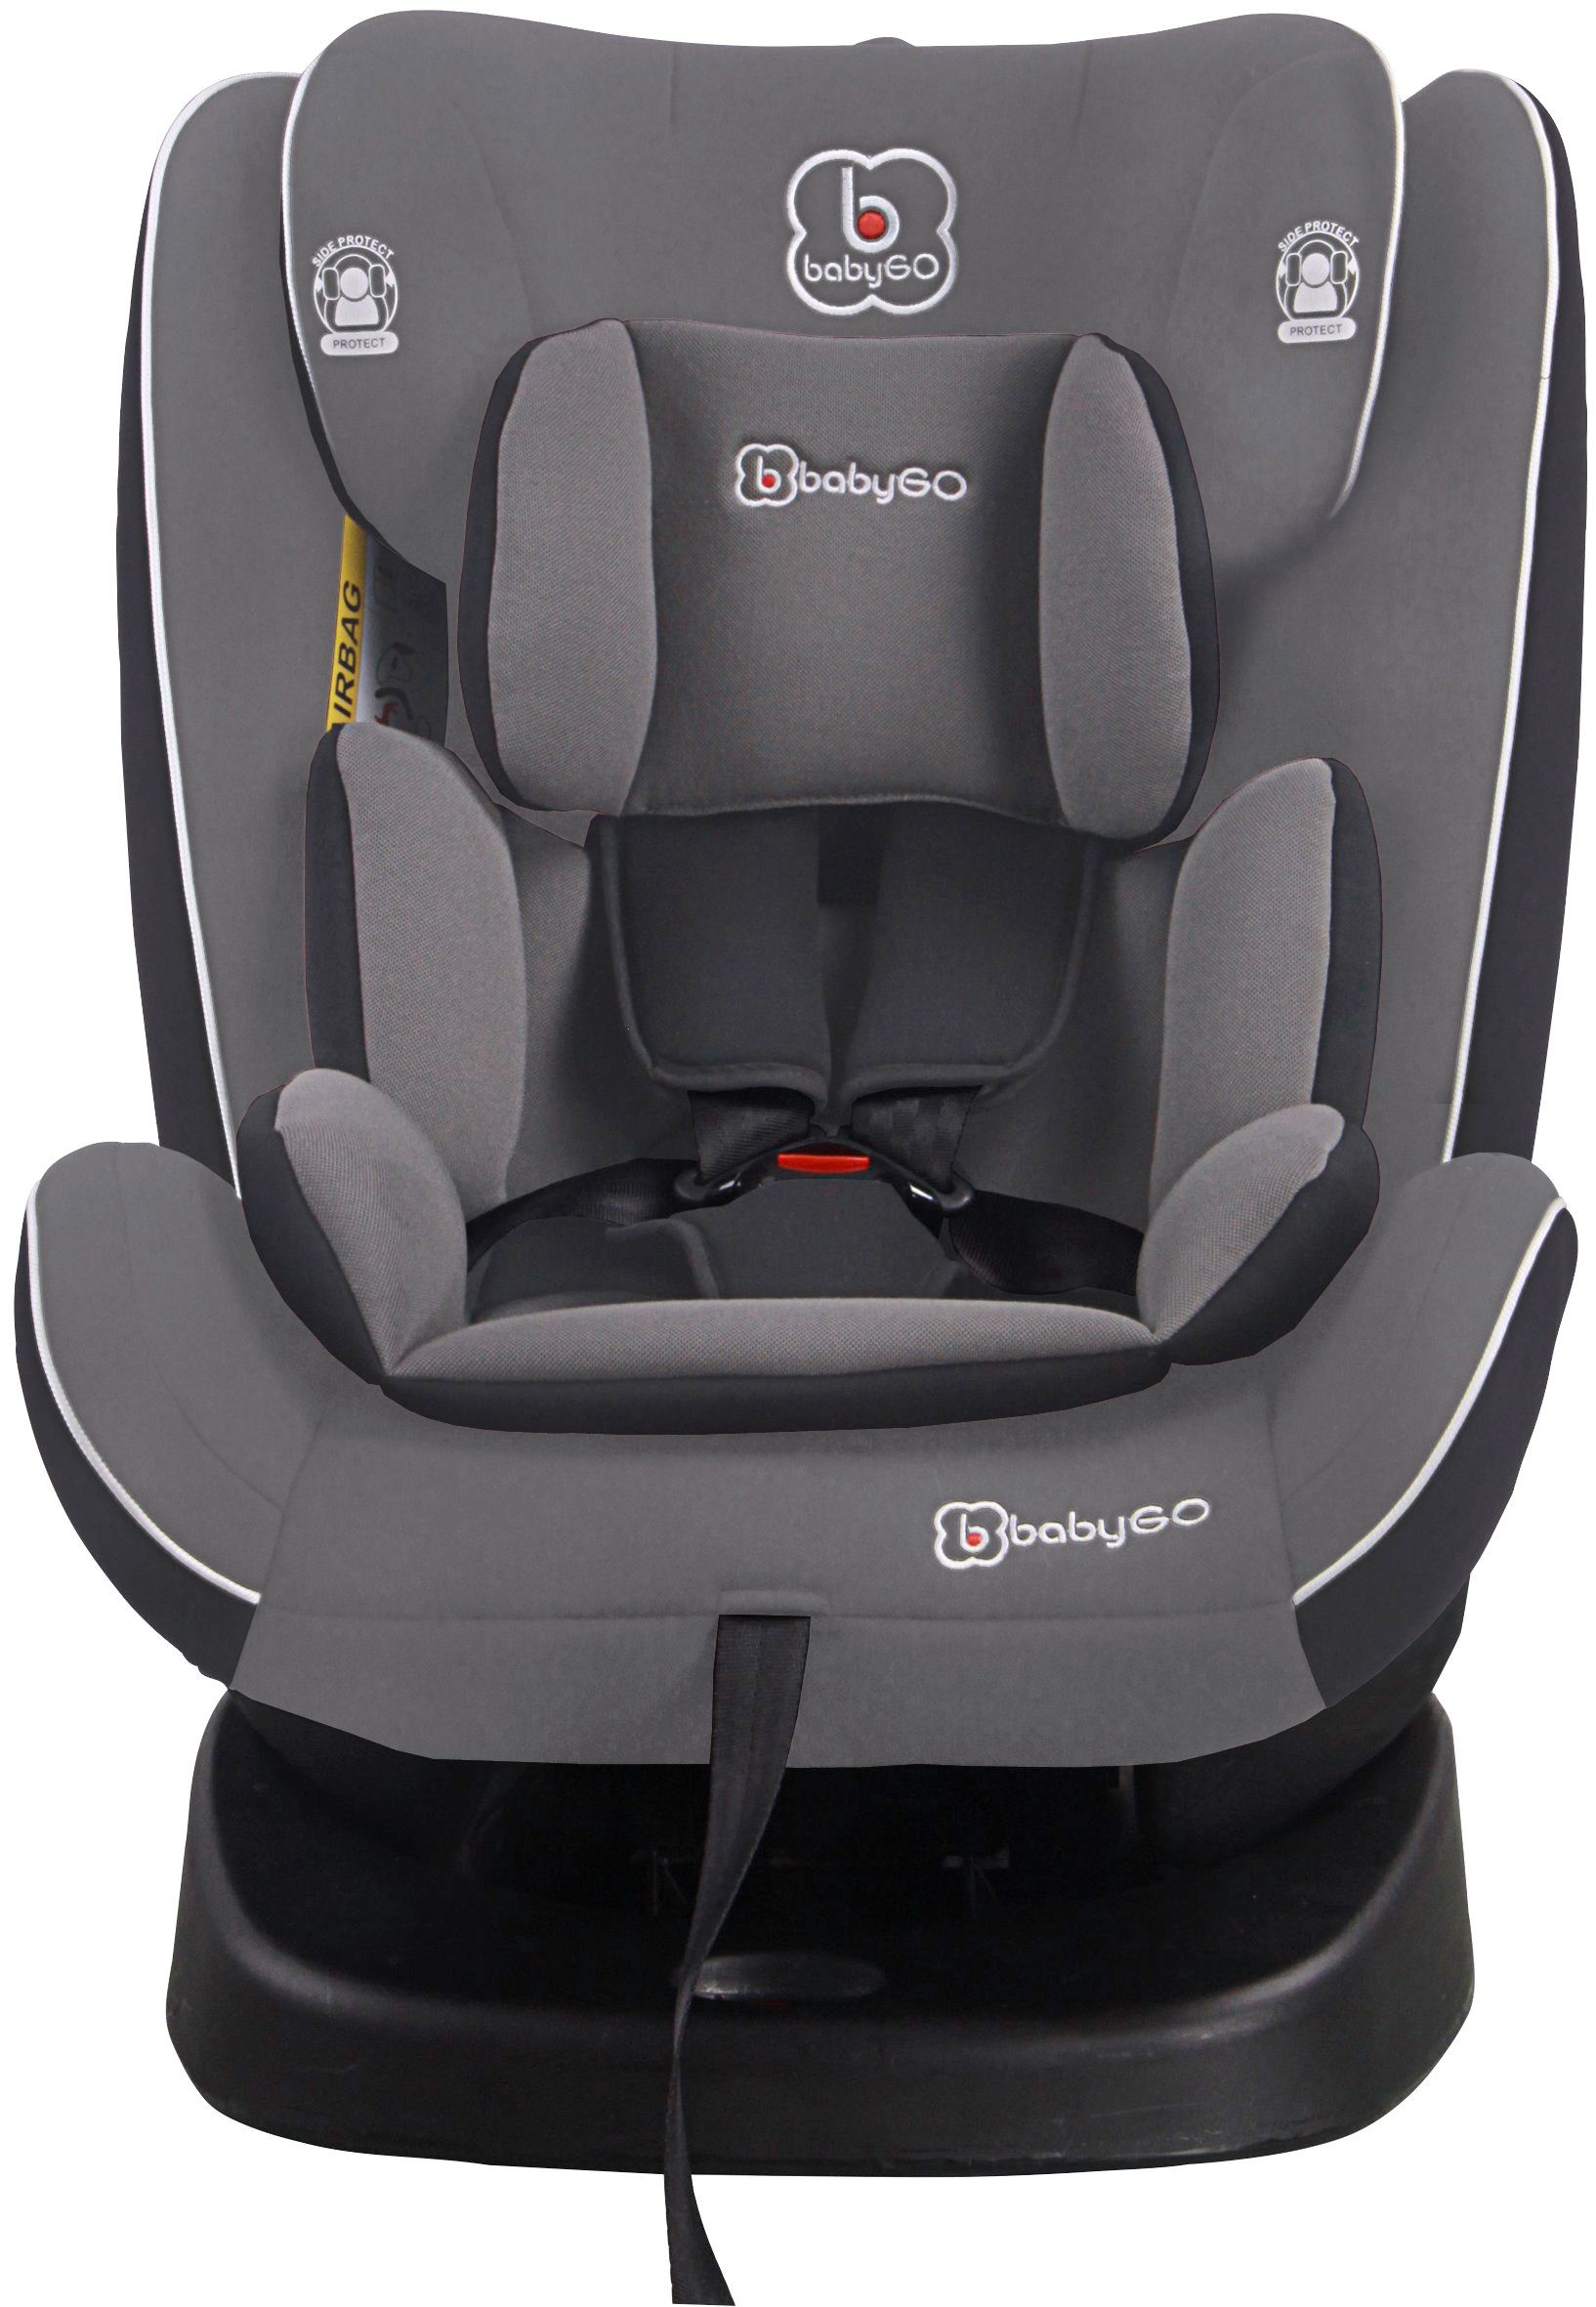 BabyGo Autokindersitz Nova, ab: 15 kg, bis: 36 kg, vorwärts für 15-36 kg,  rückwärts für 0-18 kg, Komfortables Ein- und Aussteigen, dank  360°-drehbarem Sitz